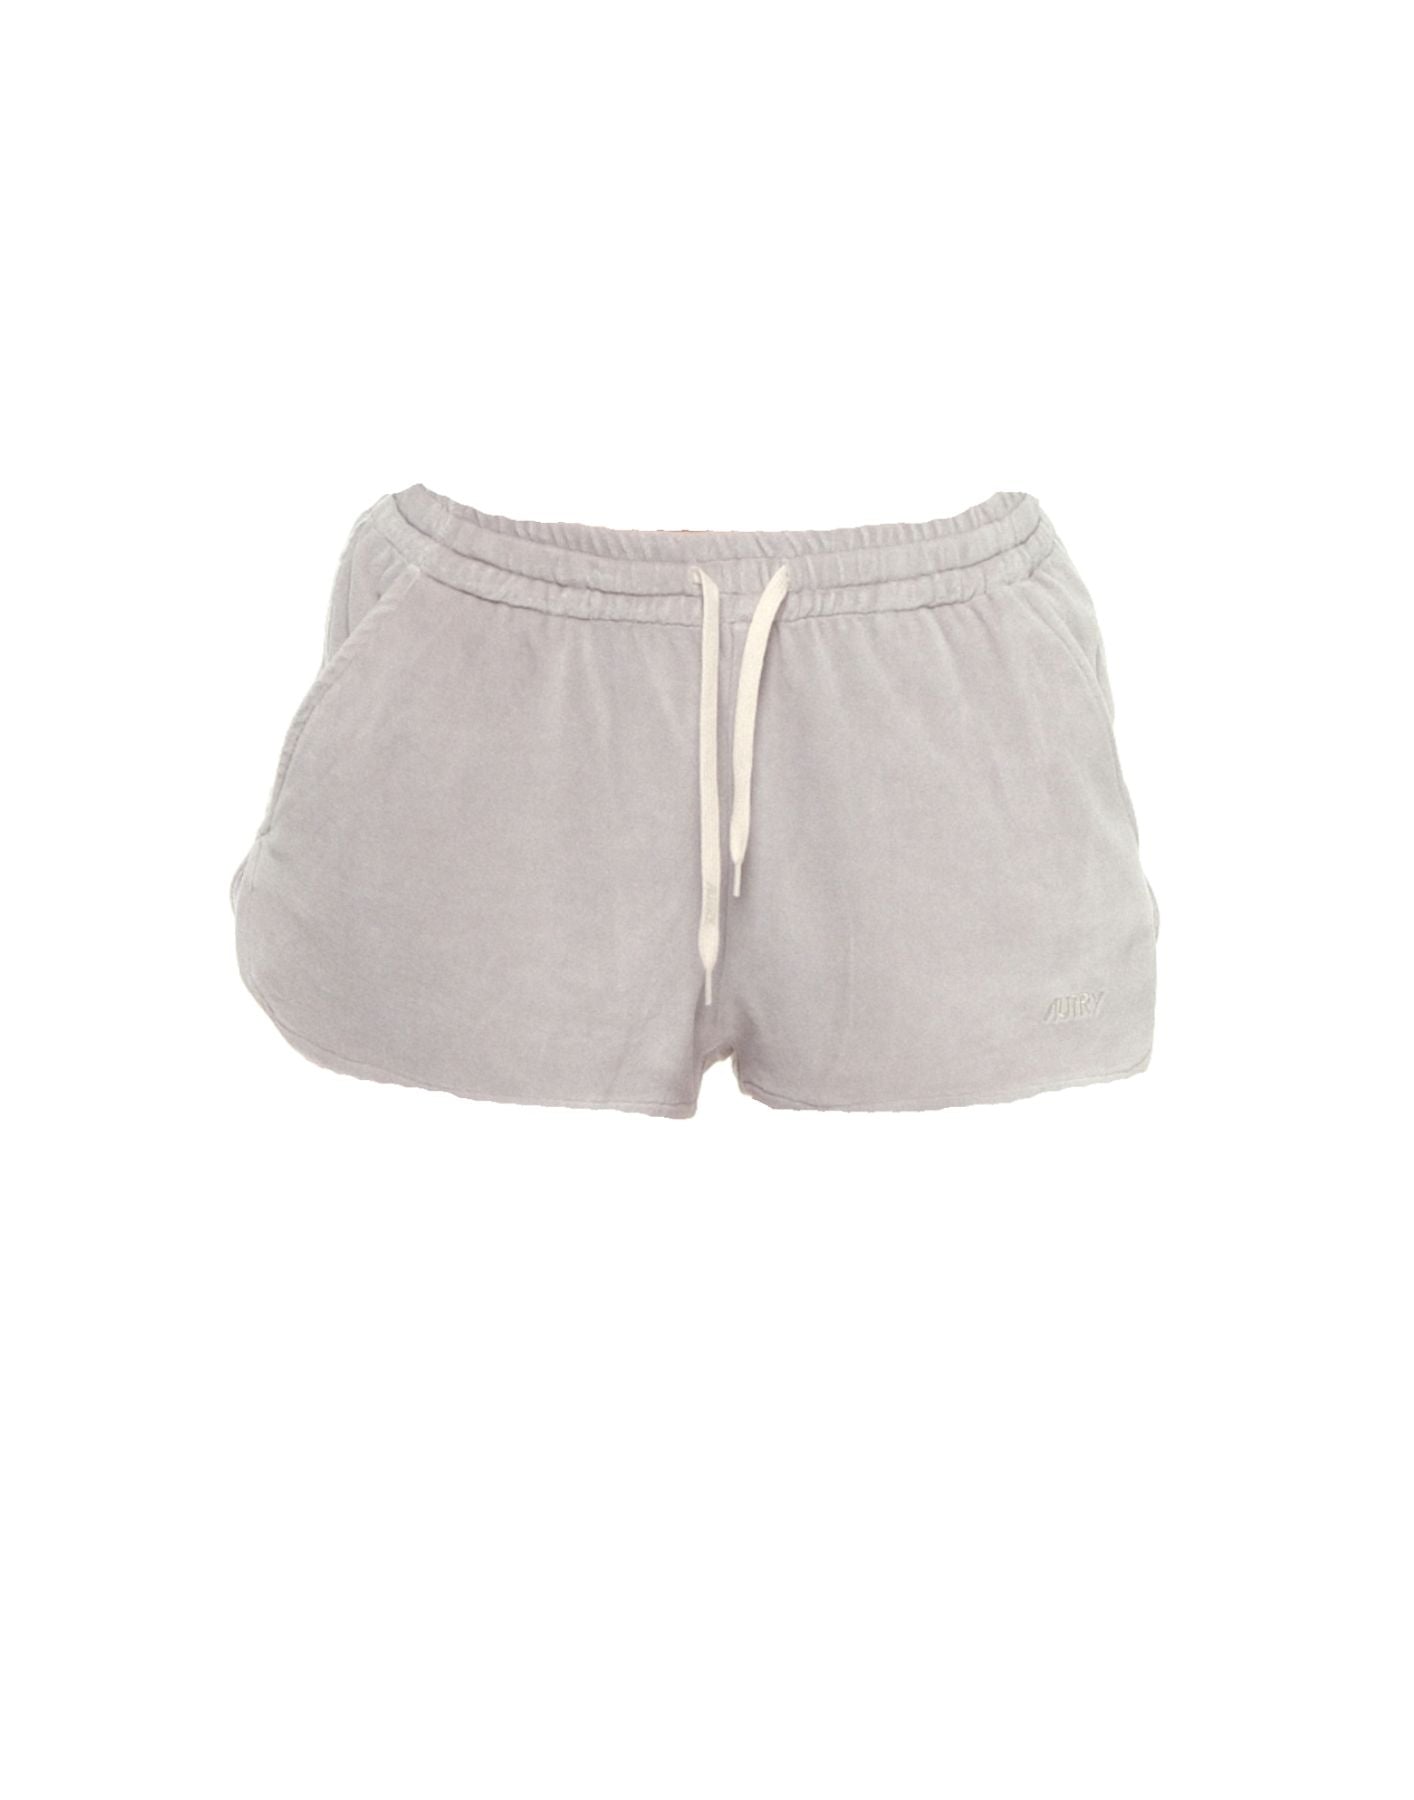 Pantalones cortos para mujer shpw 557v Autry